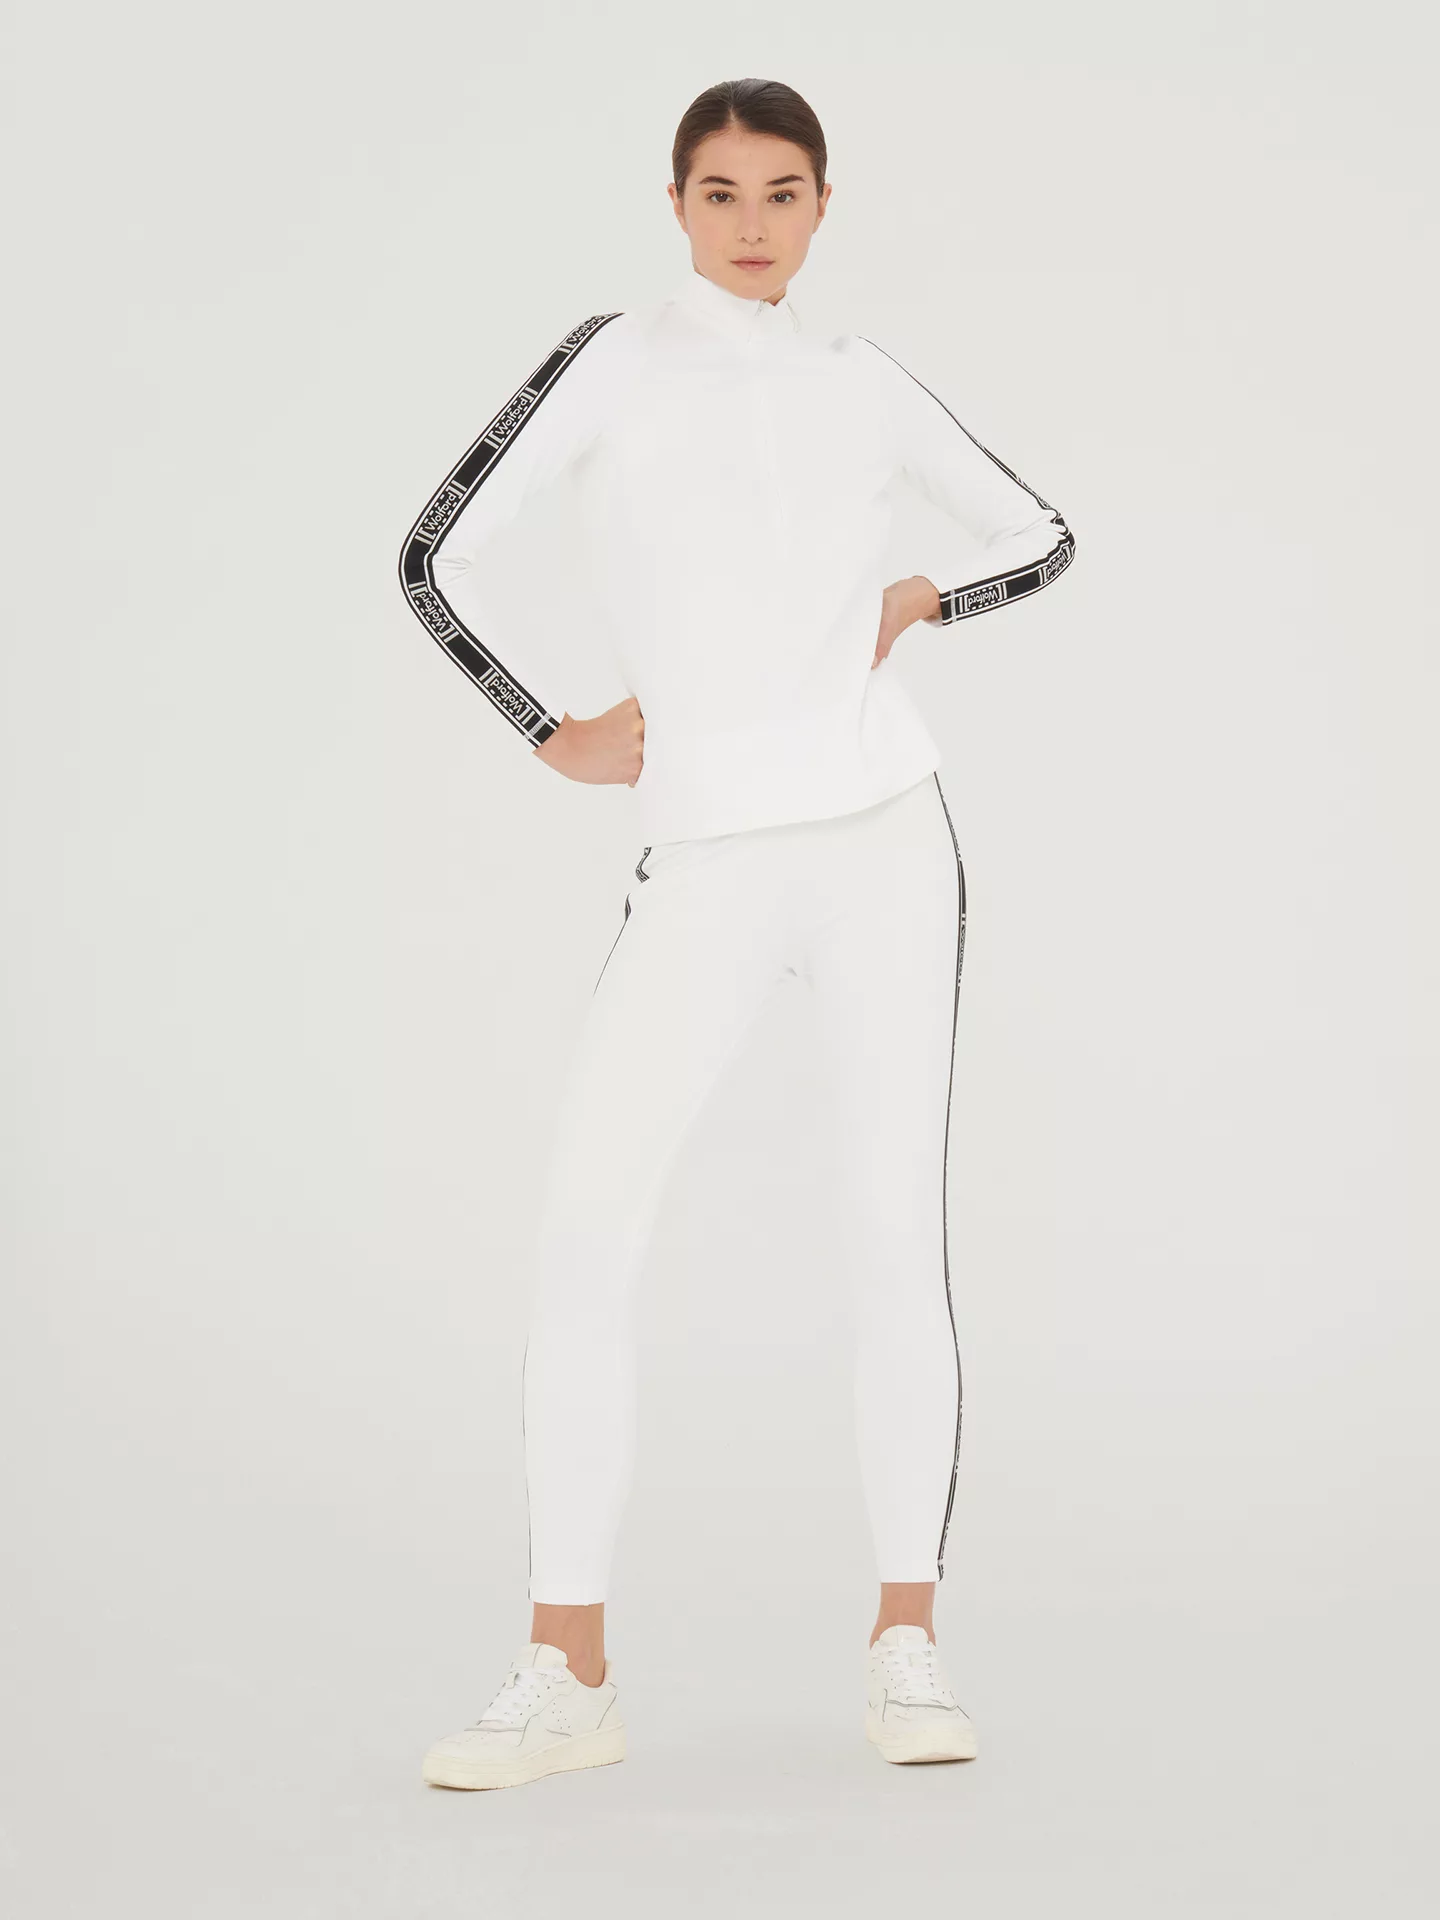 Wolford - Thermal Top Long Sleeves, Frau, white, Größe: XL günstig online kaufen